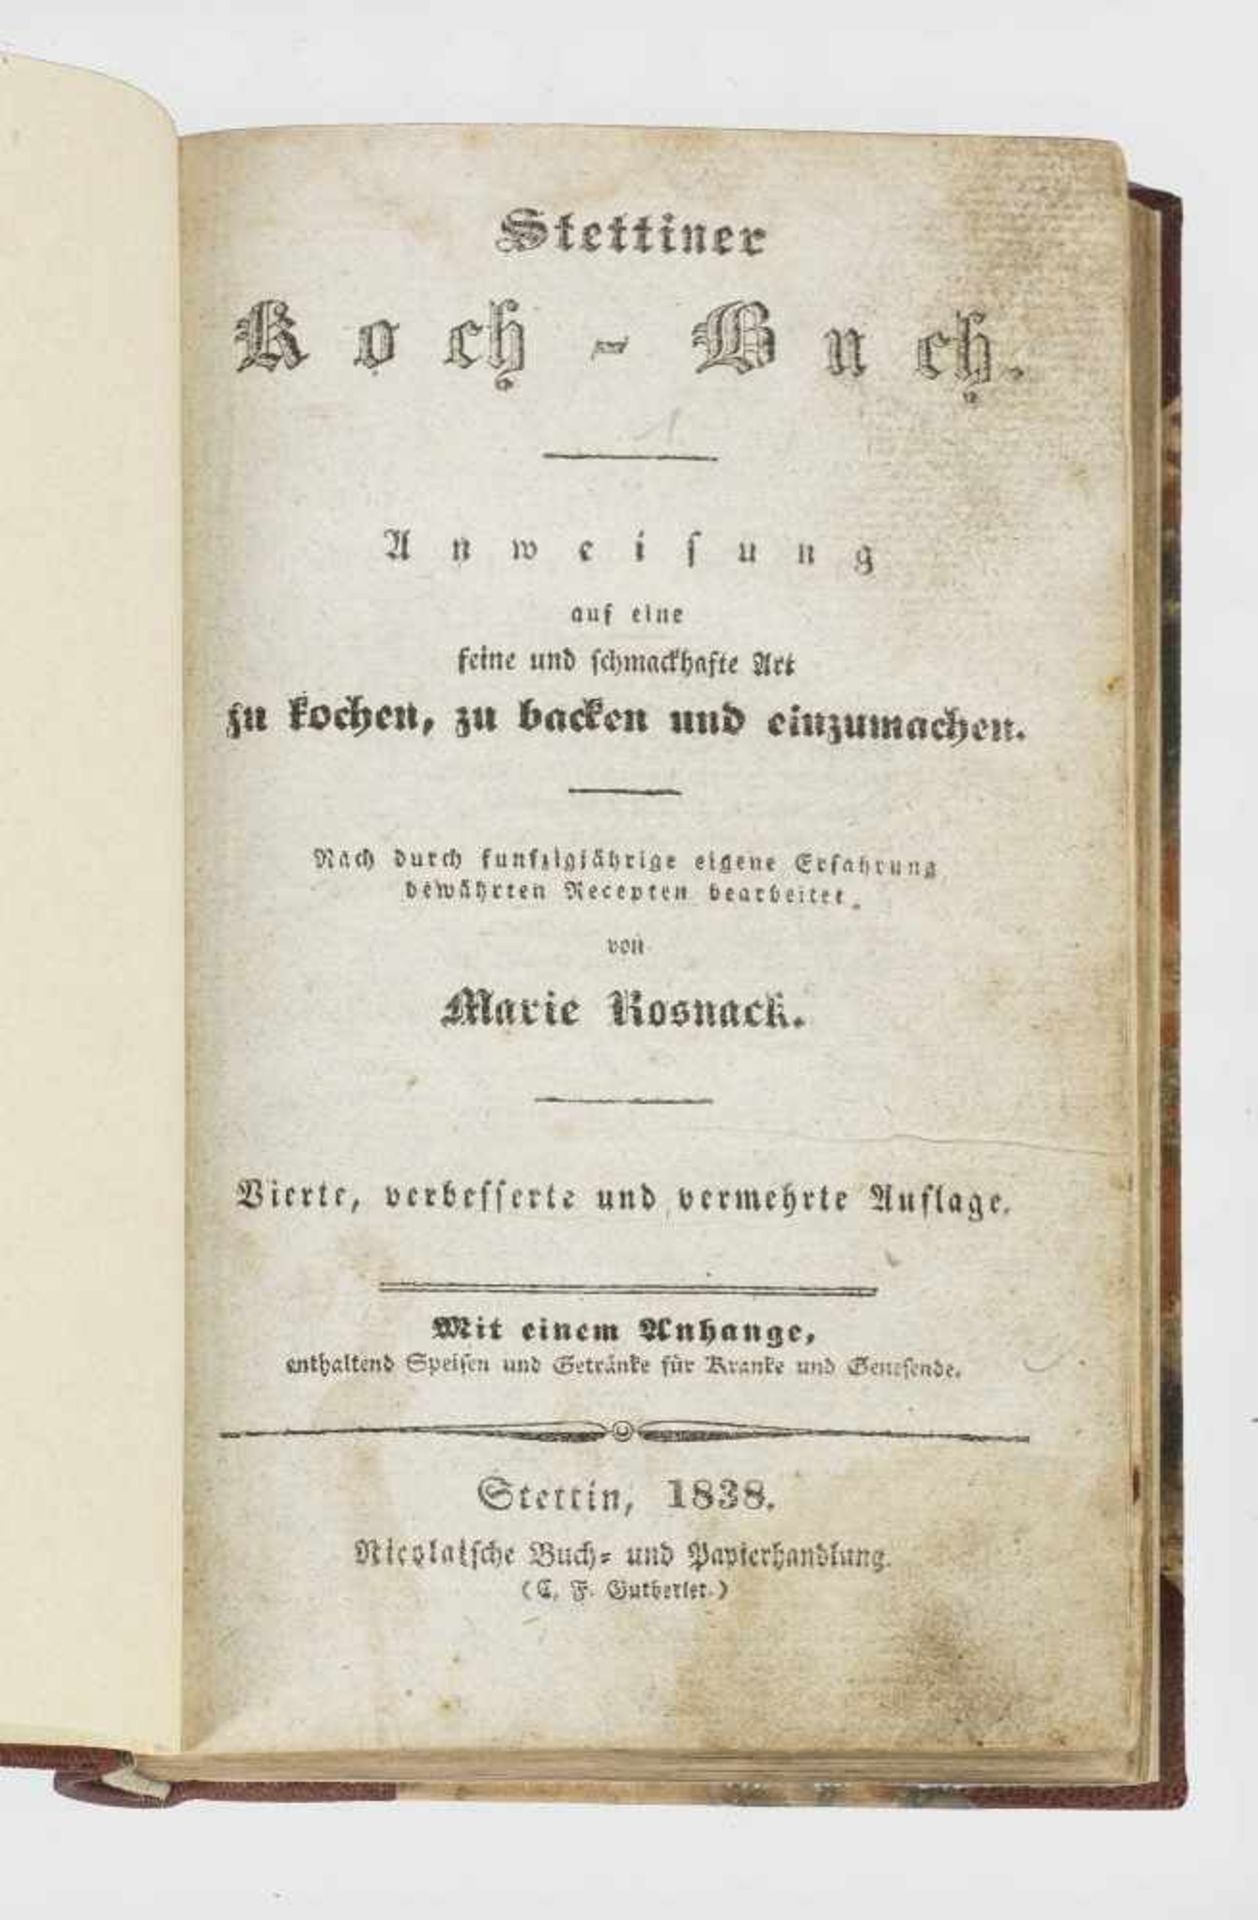 Marie Rosnack: "Stettiner Koch-Buch". OriginaltitelMarie Rosnack: "Stettiner Koch-Buch".